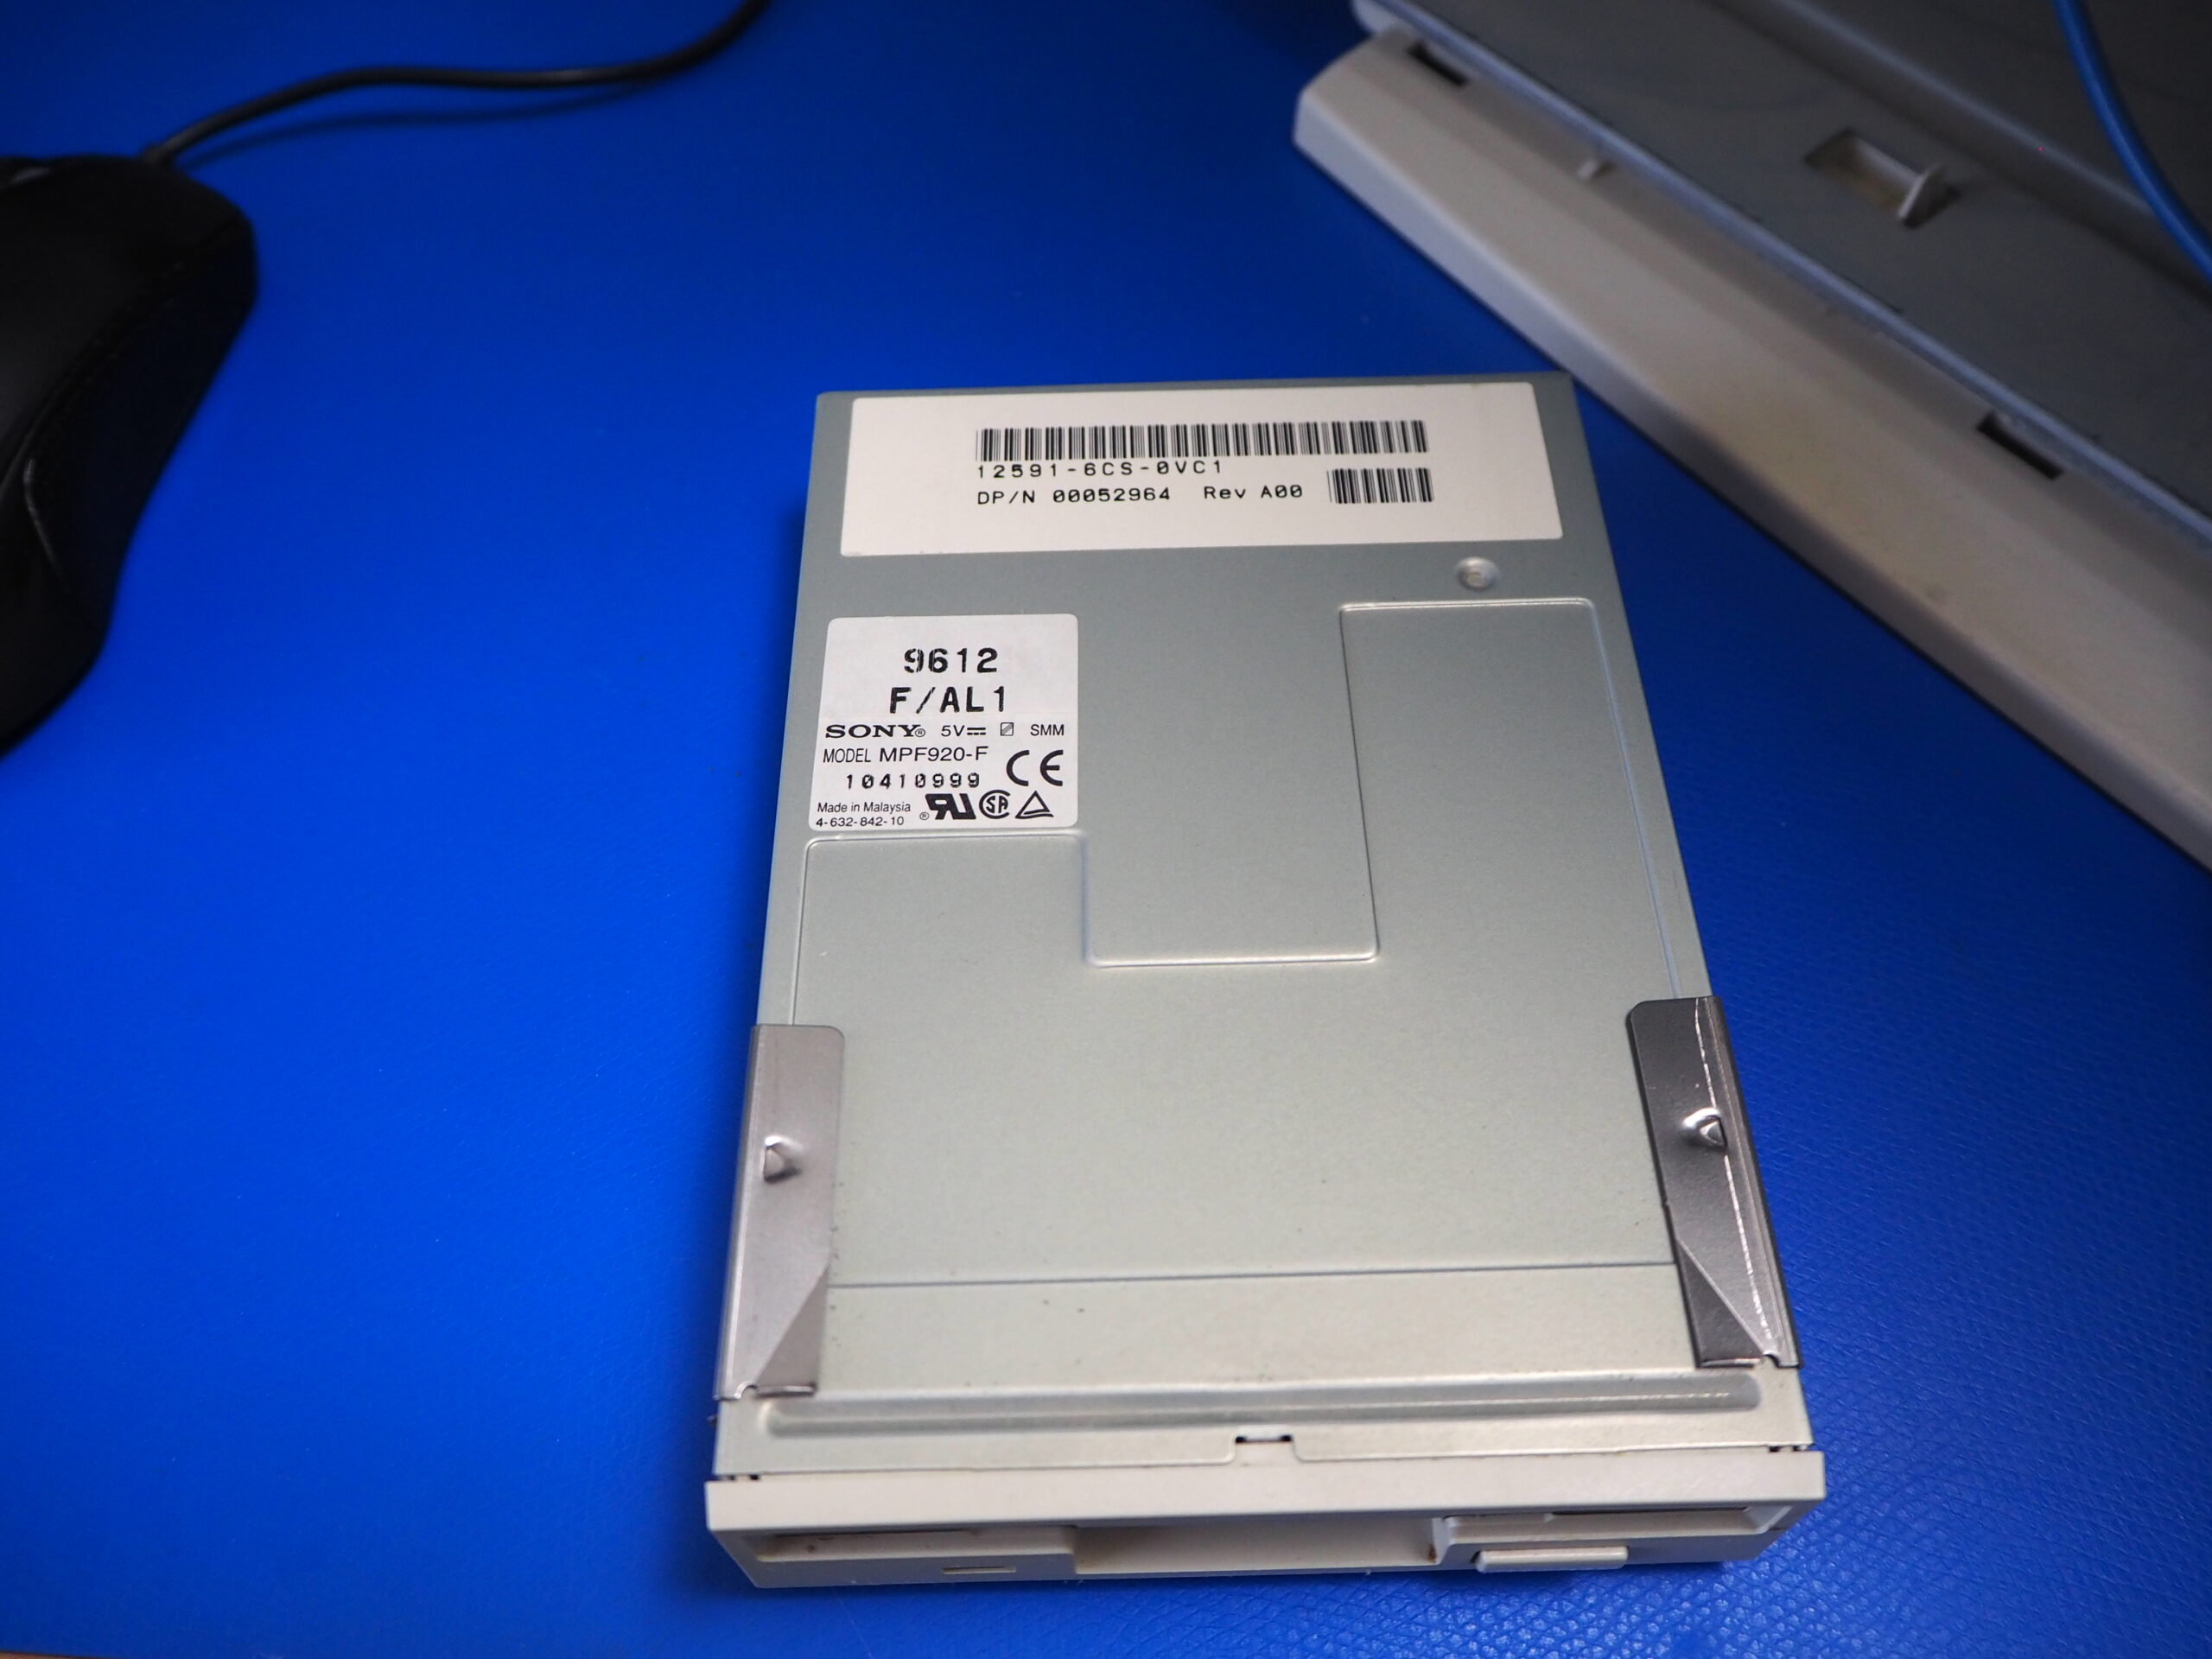 Sony floppy drive